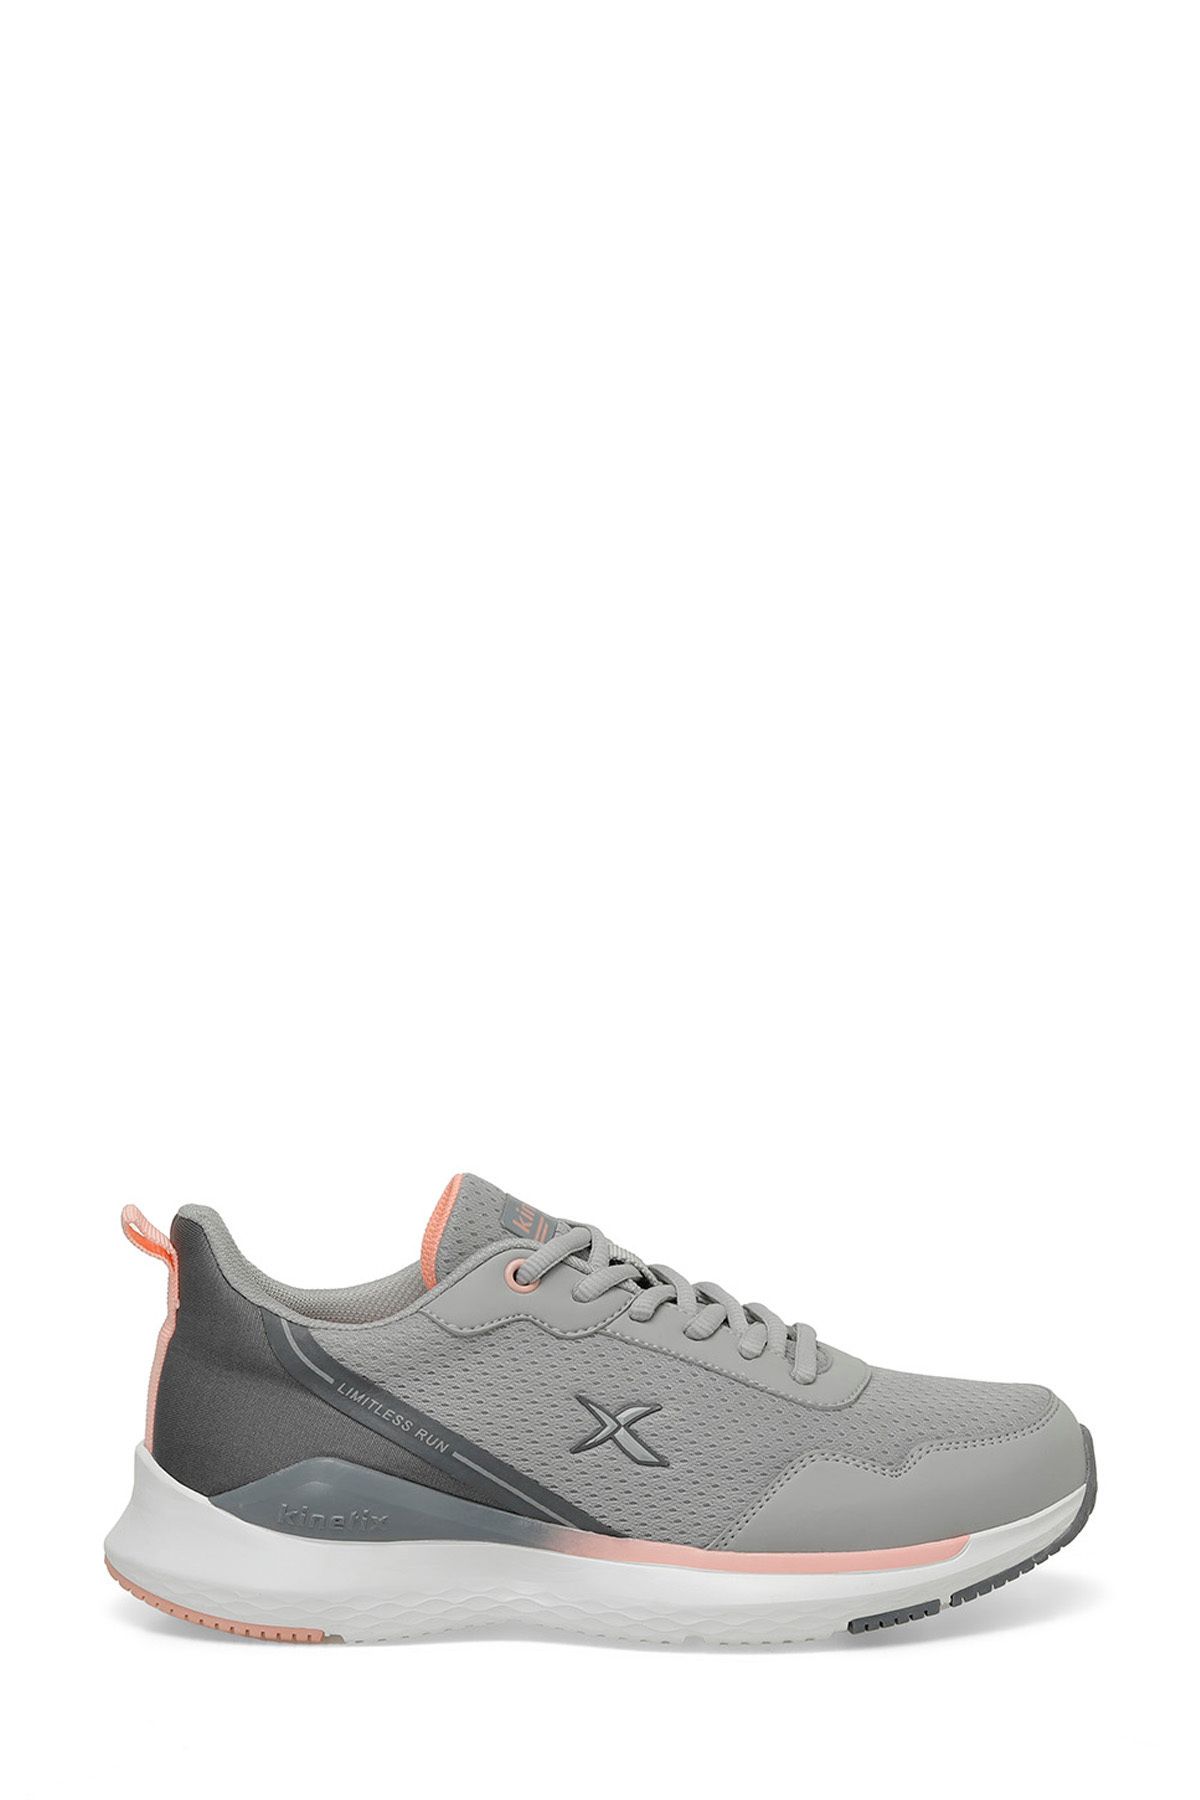 Kinetix BYTER TX W 3FX Gri Kadın Koşu Ayakkabısı